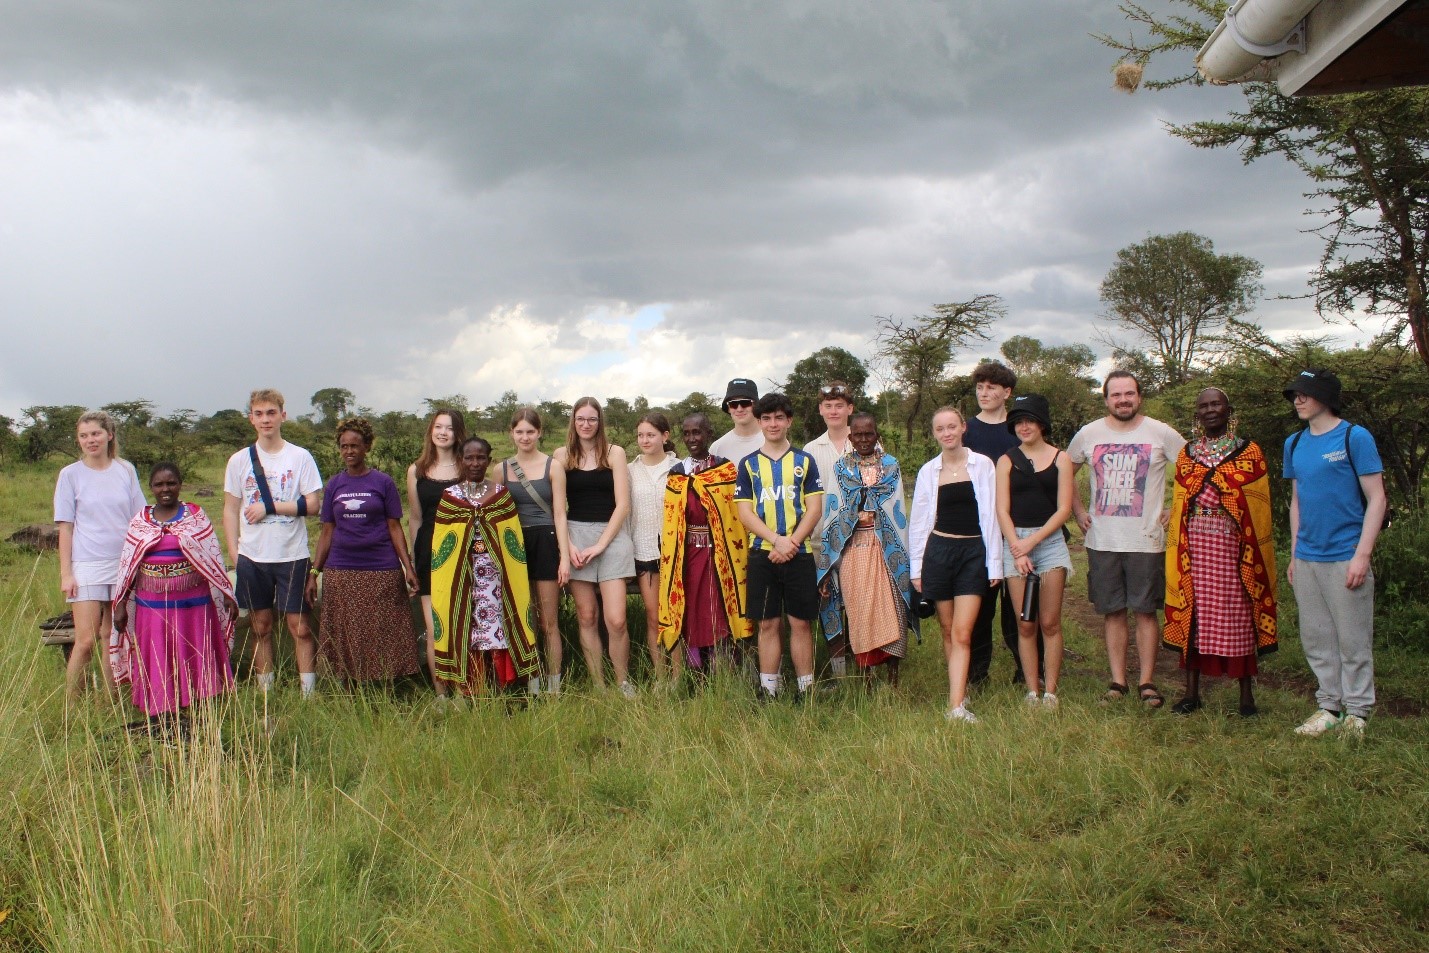 Ryoomgaard Realskole Students’ Journey at Karen Blixen Camp